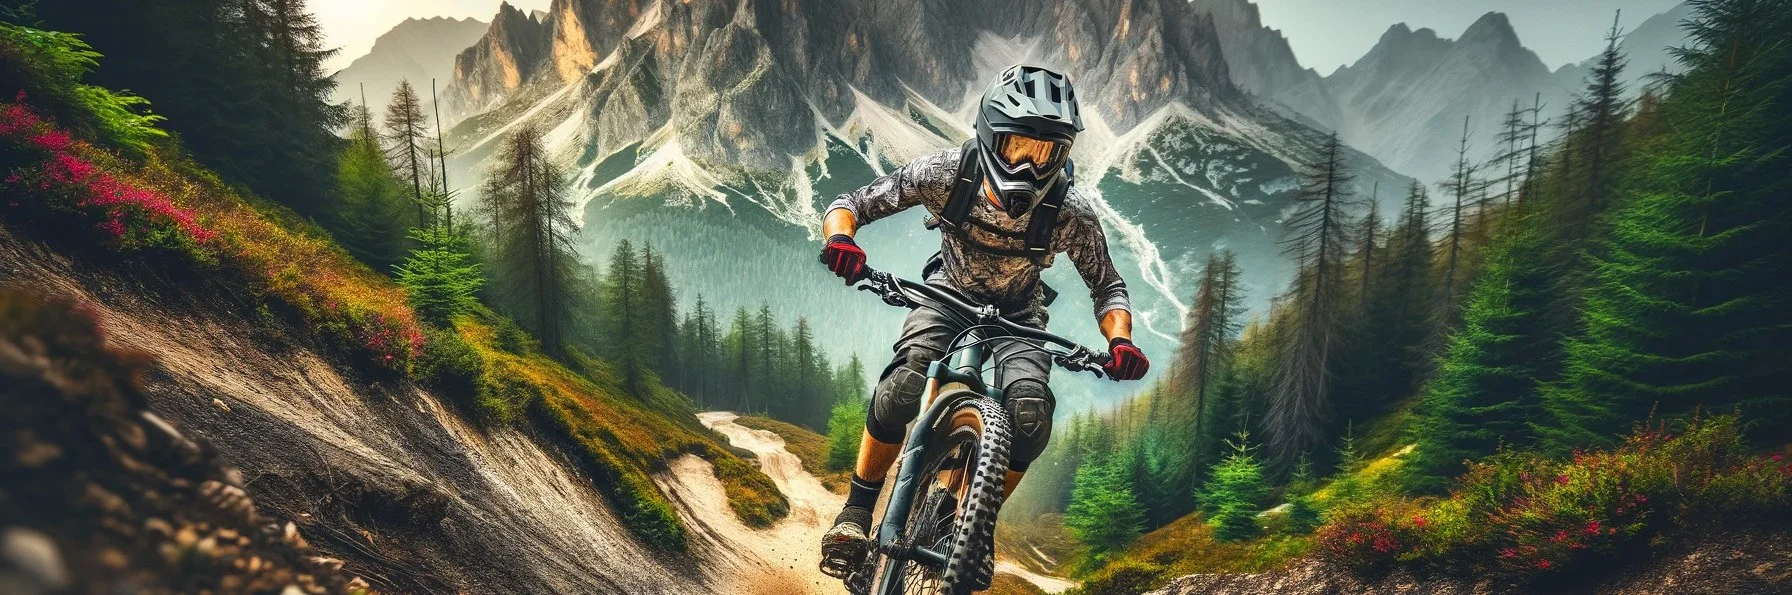 bike in mountain